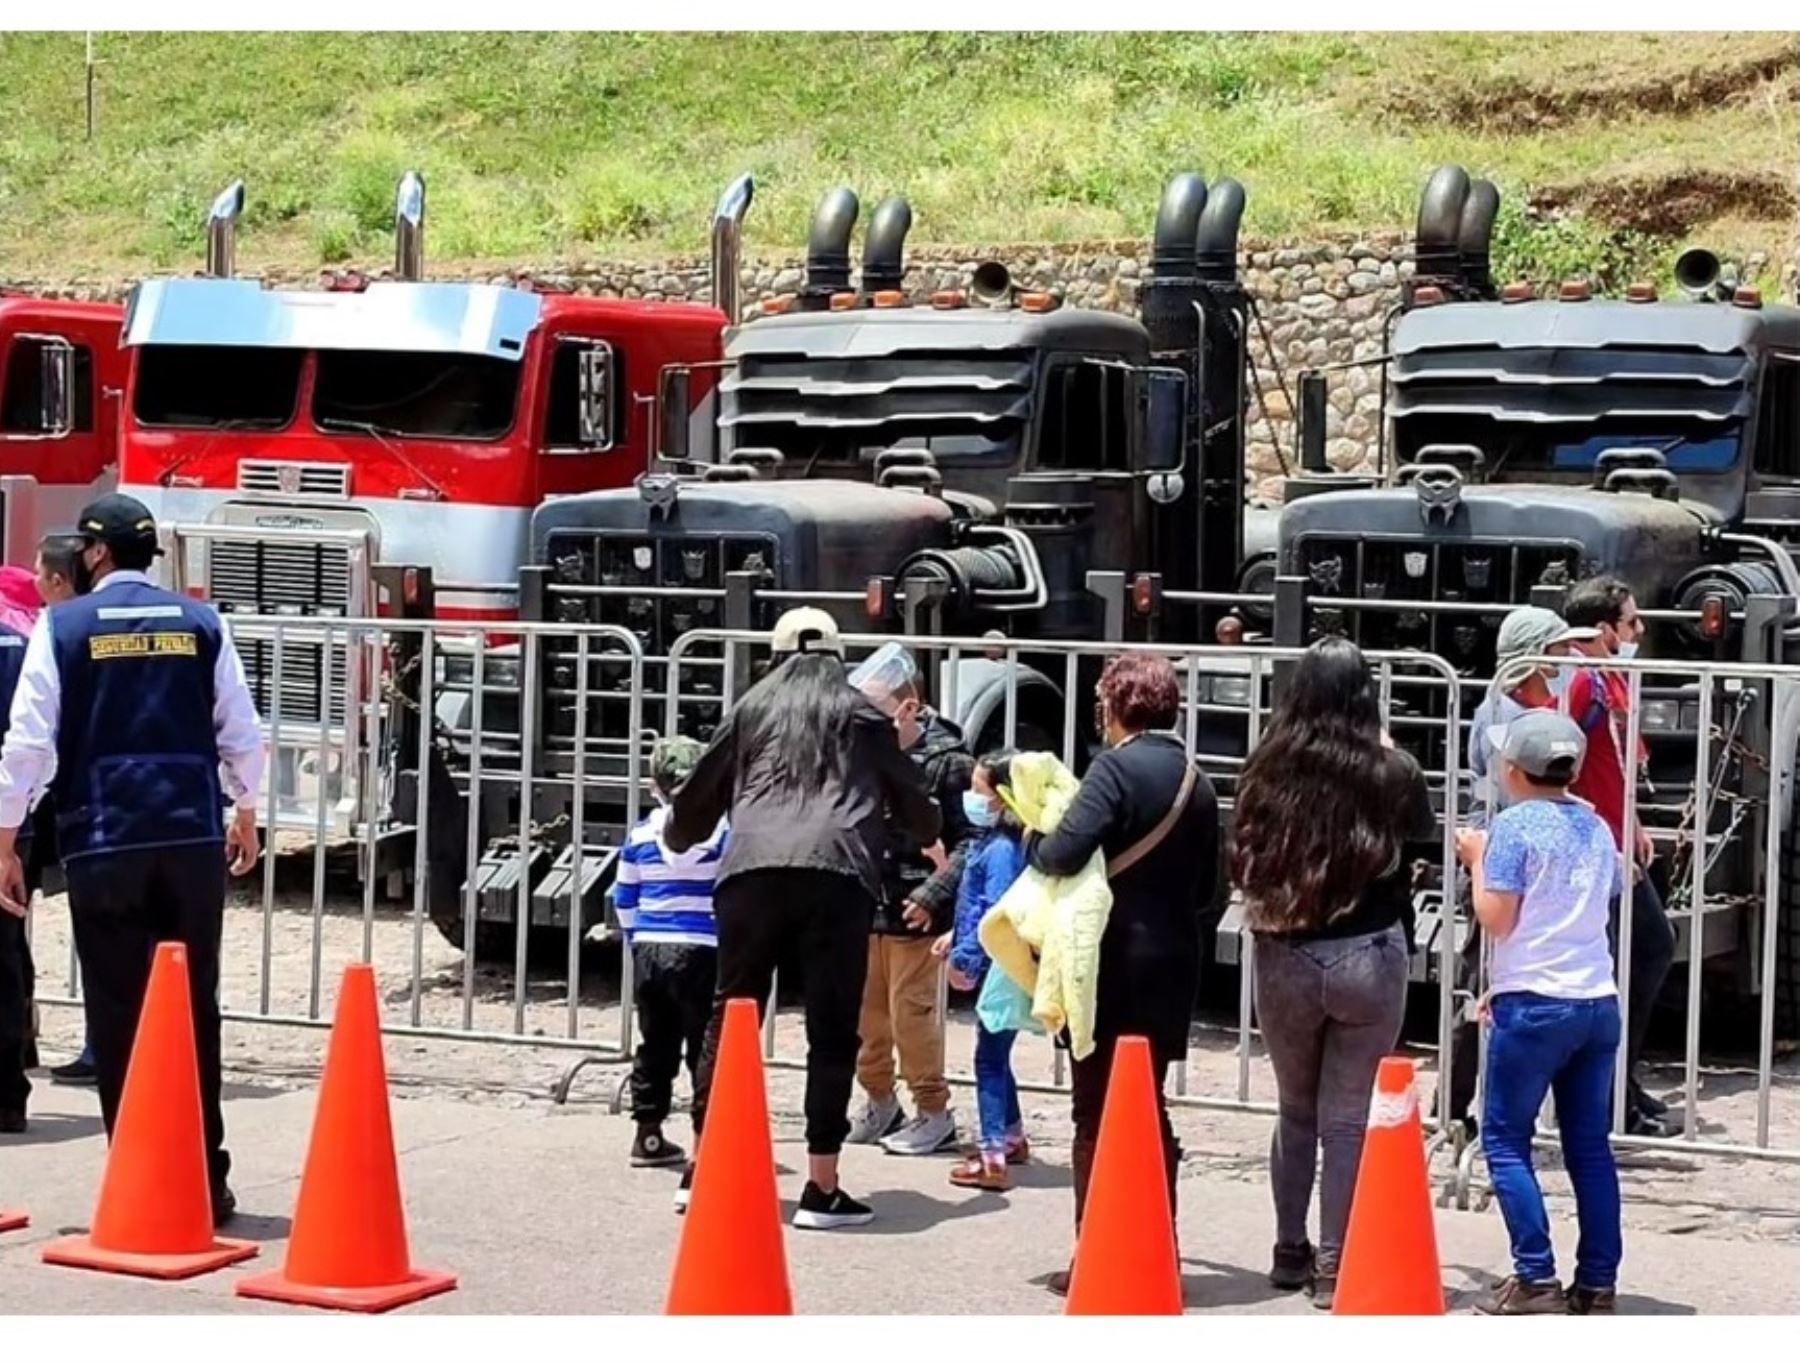 Los Transformers son sensación en Cusco. Decenas de familias cusqueñas y turistas se toman fotos con vehículos que protagonizan película. Foto: ANDINA/Percy Hurtado